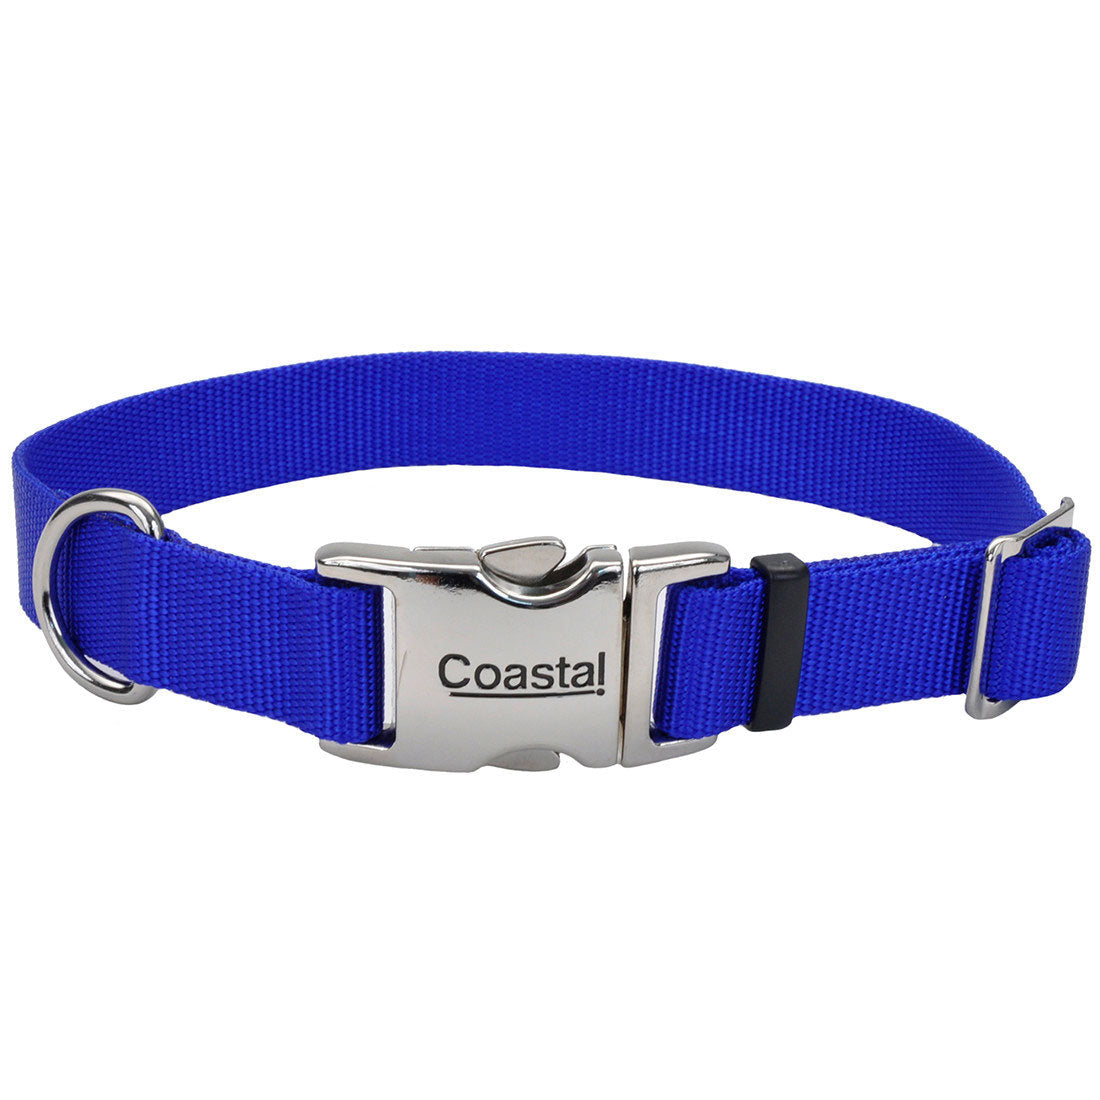 Coastal Pet Products, Coastal Adjustable Dog Collar with Metal Buckle